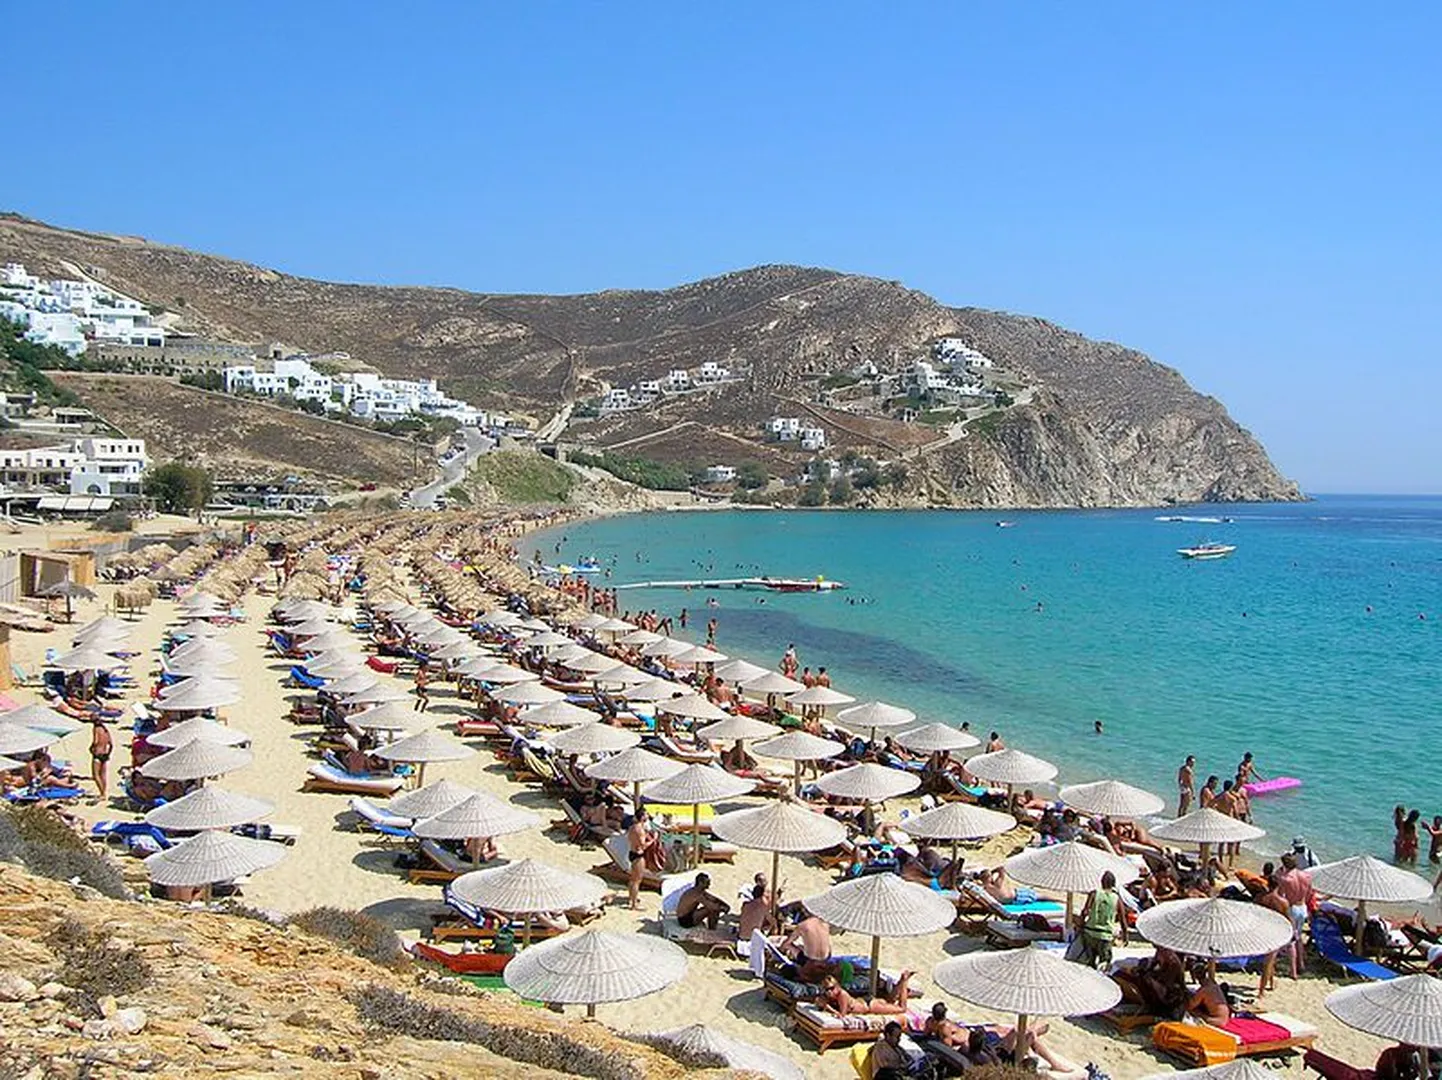 Kreeka on müüki pannud tükikese Mykonose saarest.